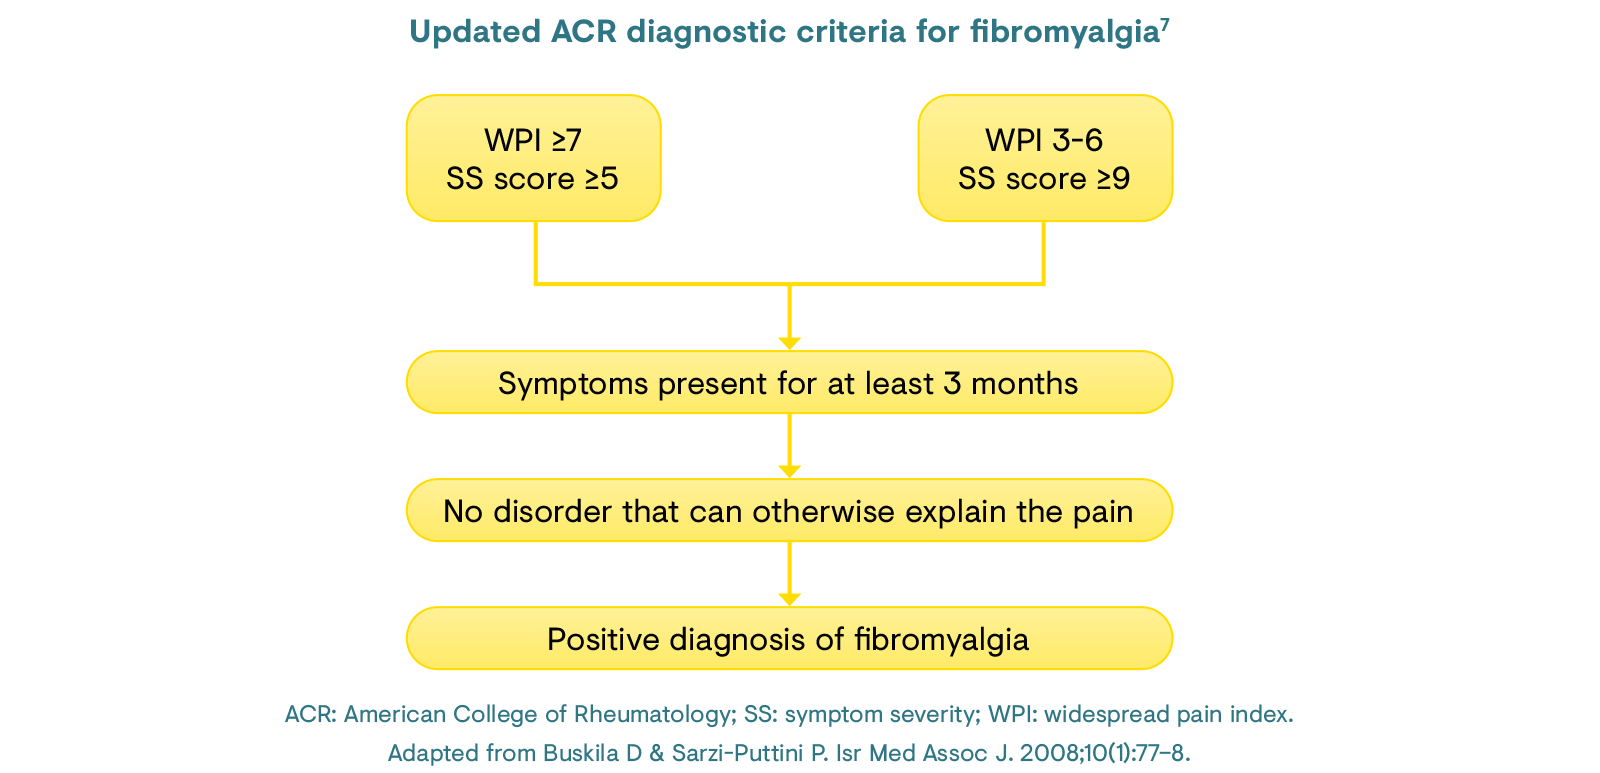 Updated ACR diagnostic criteria for fibromyalgia